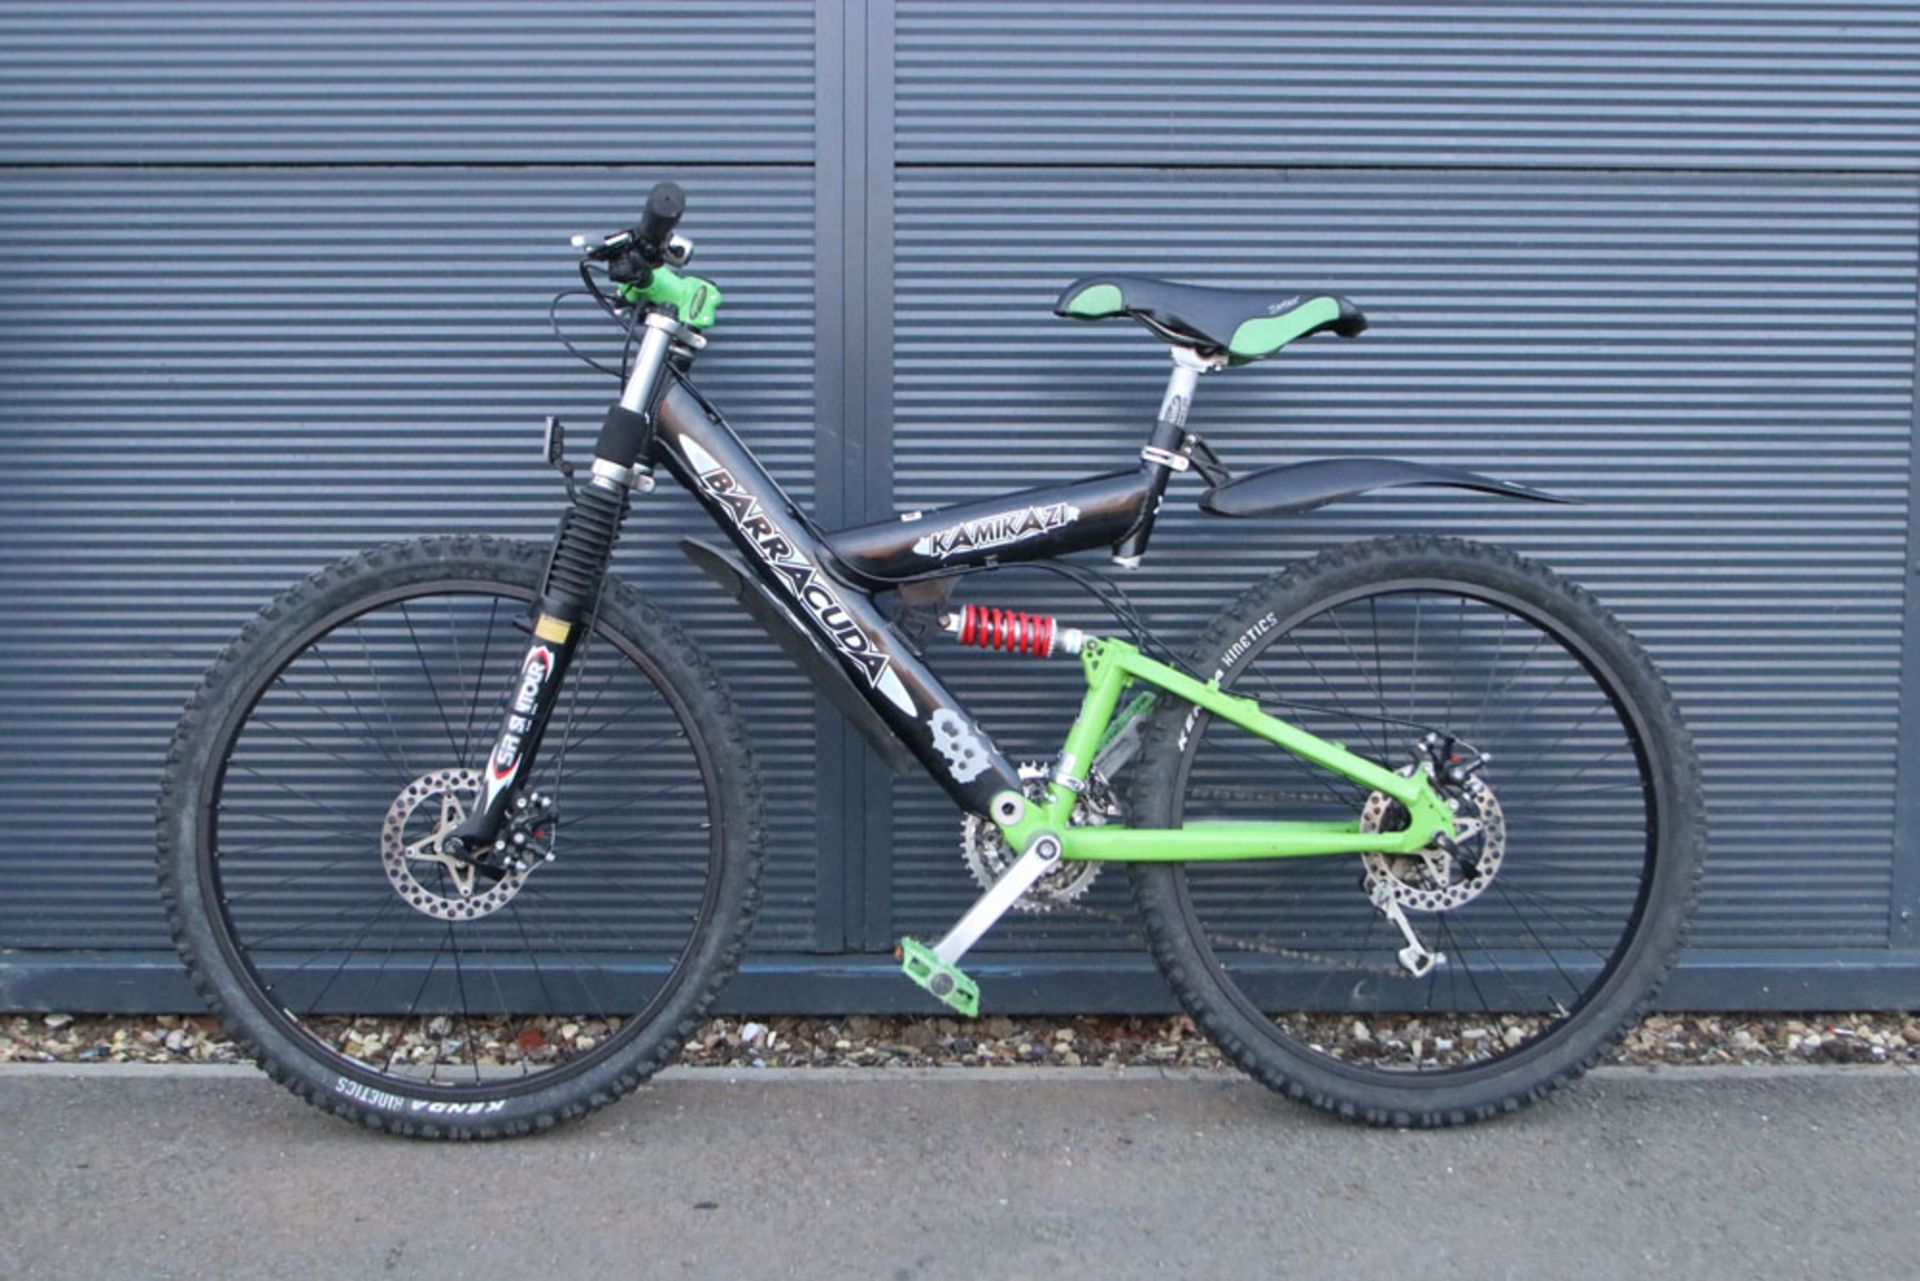 Green and black Barracuda mountain bike